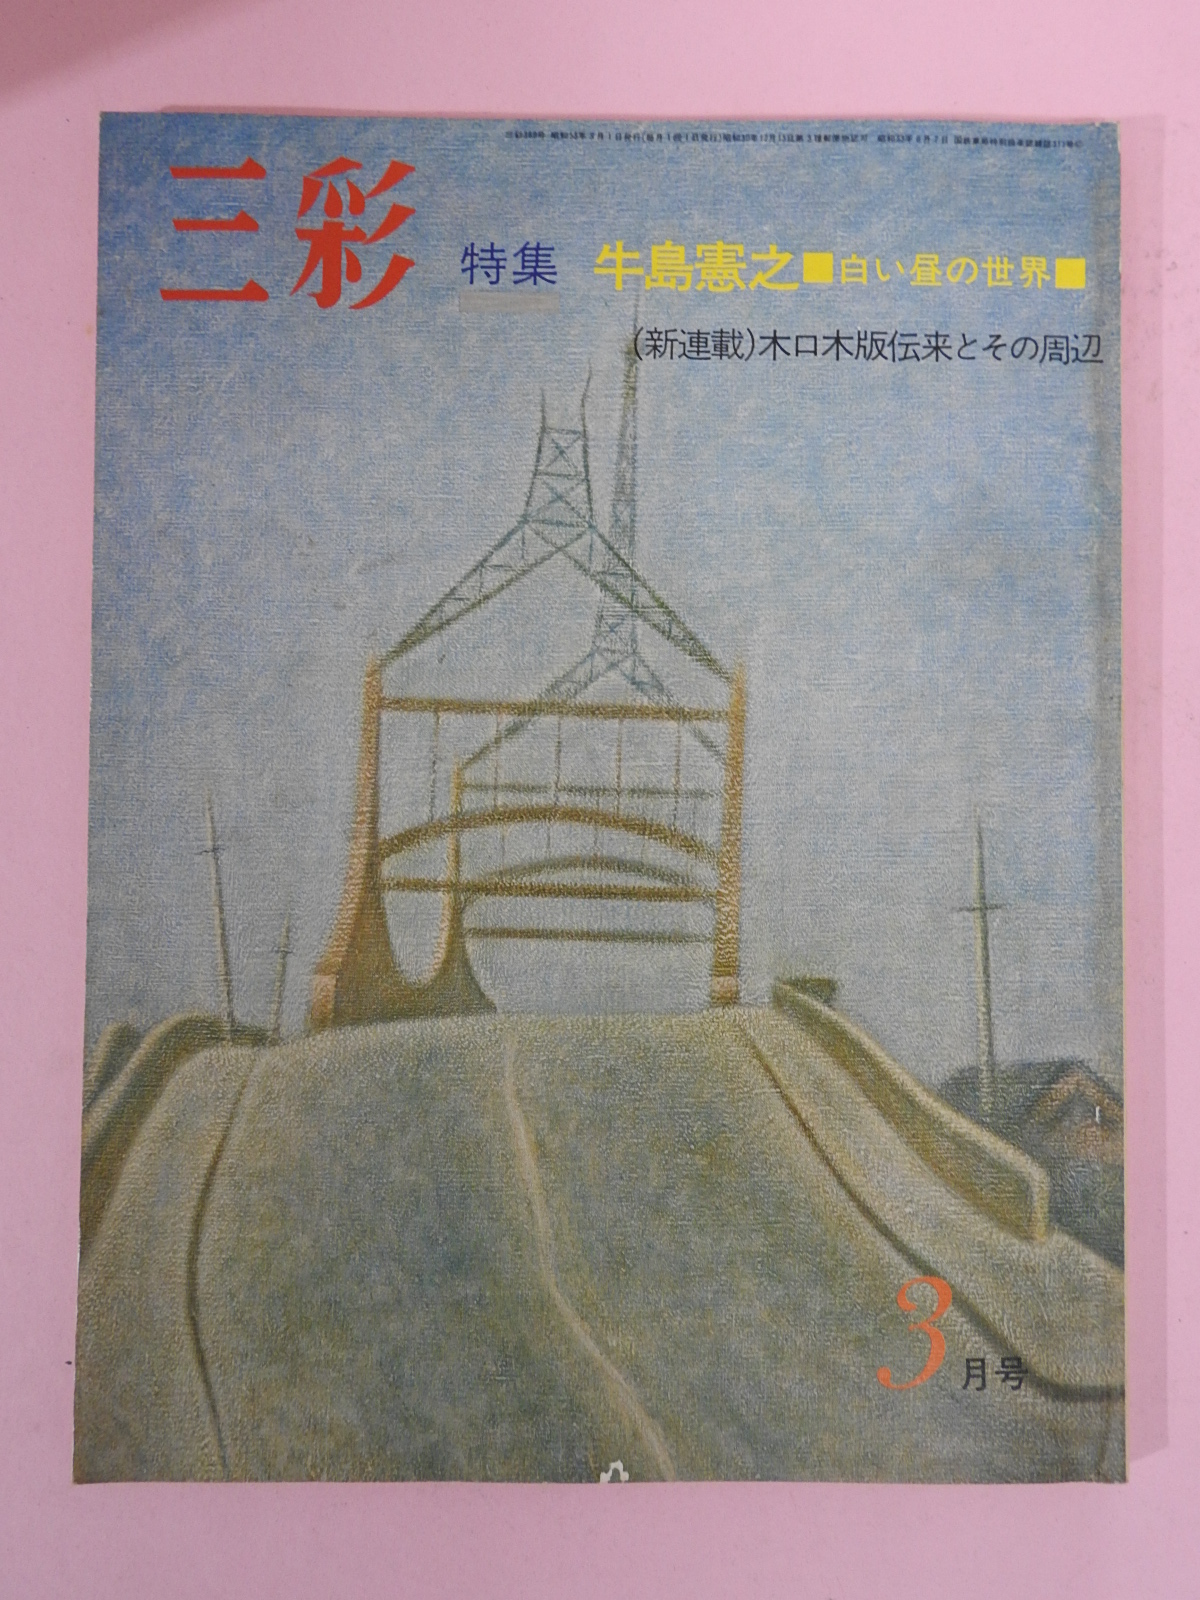 1977년 일본미술잡지 도록